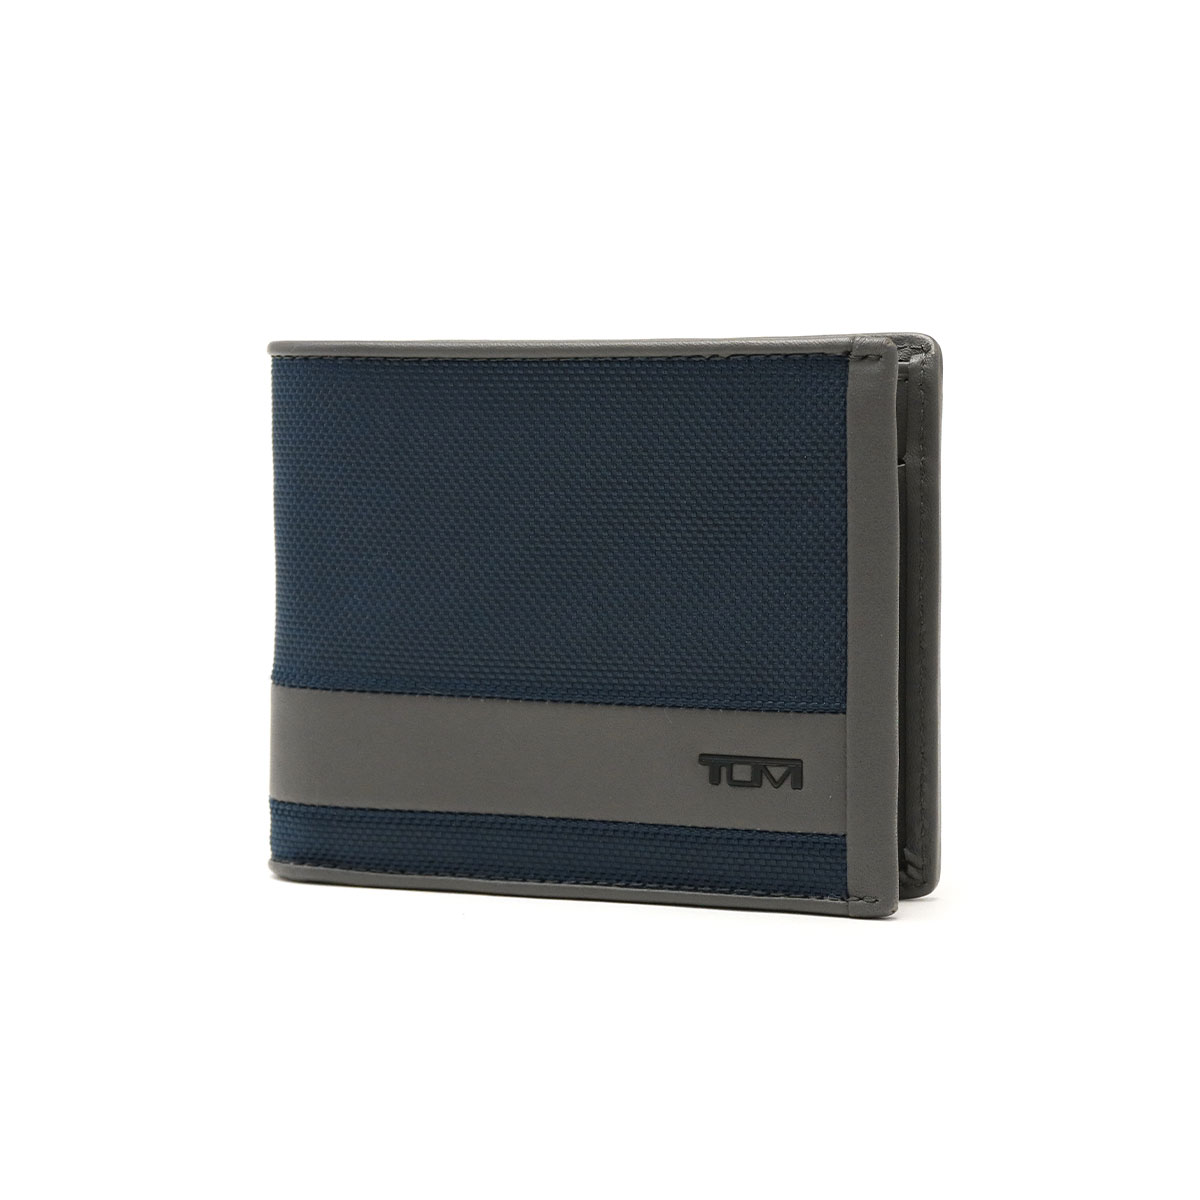 正規品2年保証 トゥミ 財布 TUMI 二つ折り財布 ブランド ALPHA